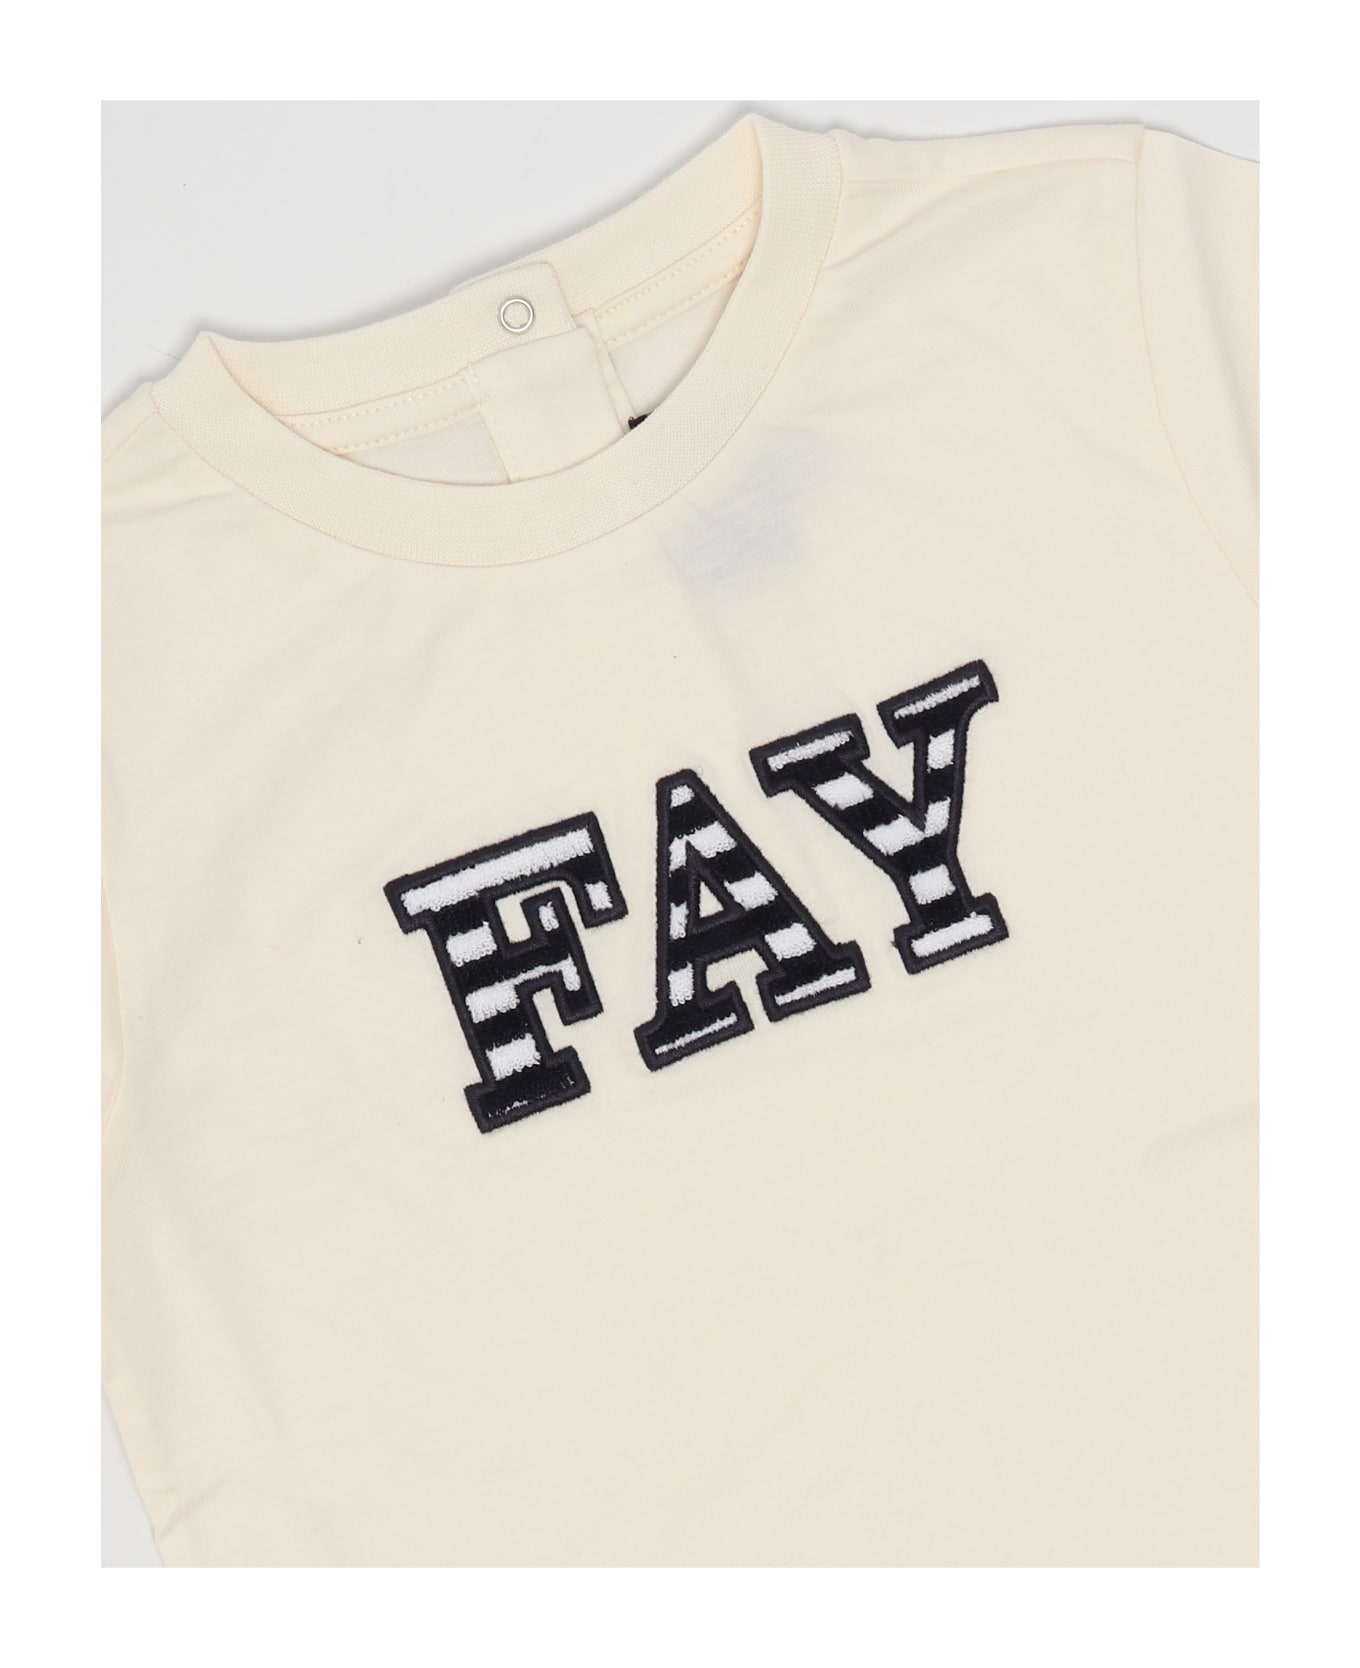 Fay T-shirt T-shirt - AVORIO Tシャツ＆ポロシャツ